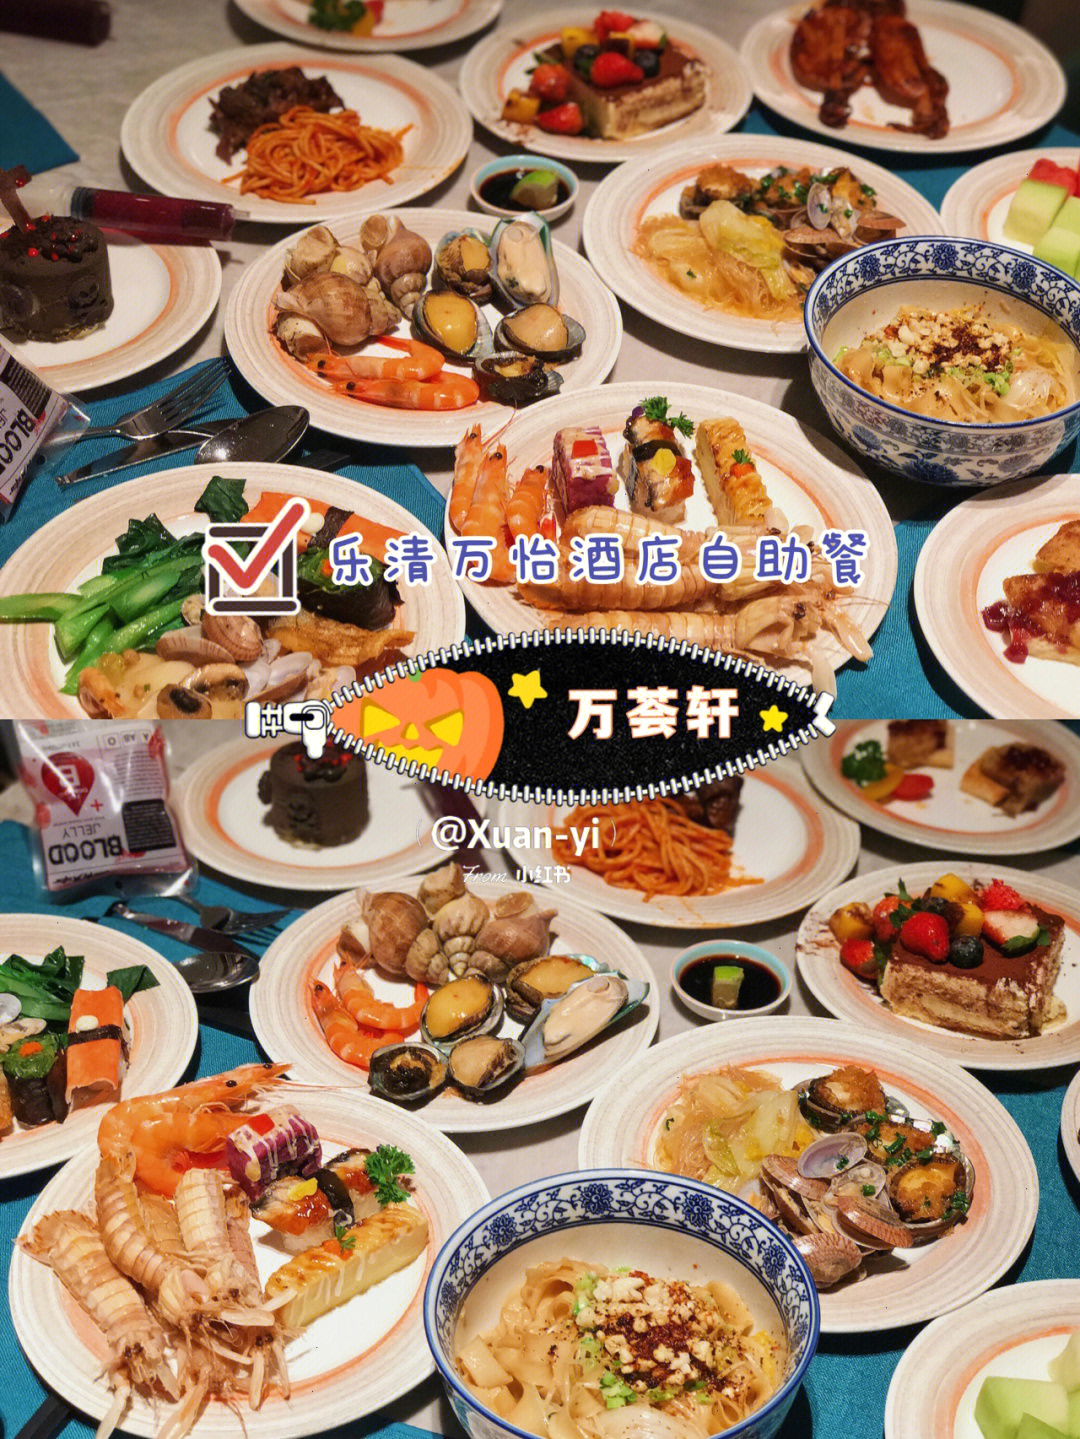 乐清南虹广场自助餐图片